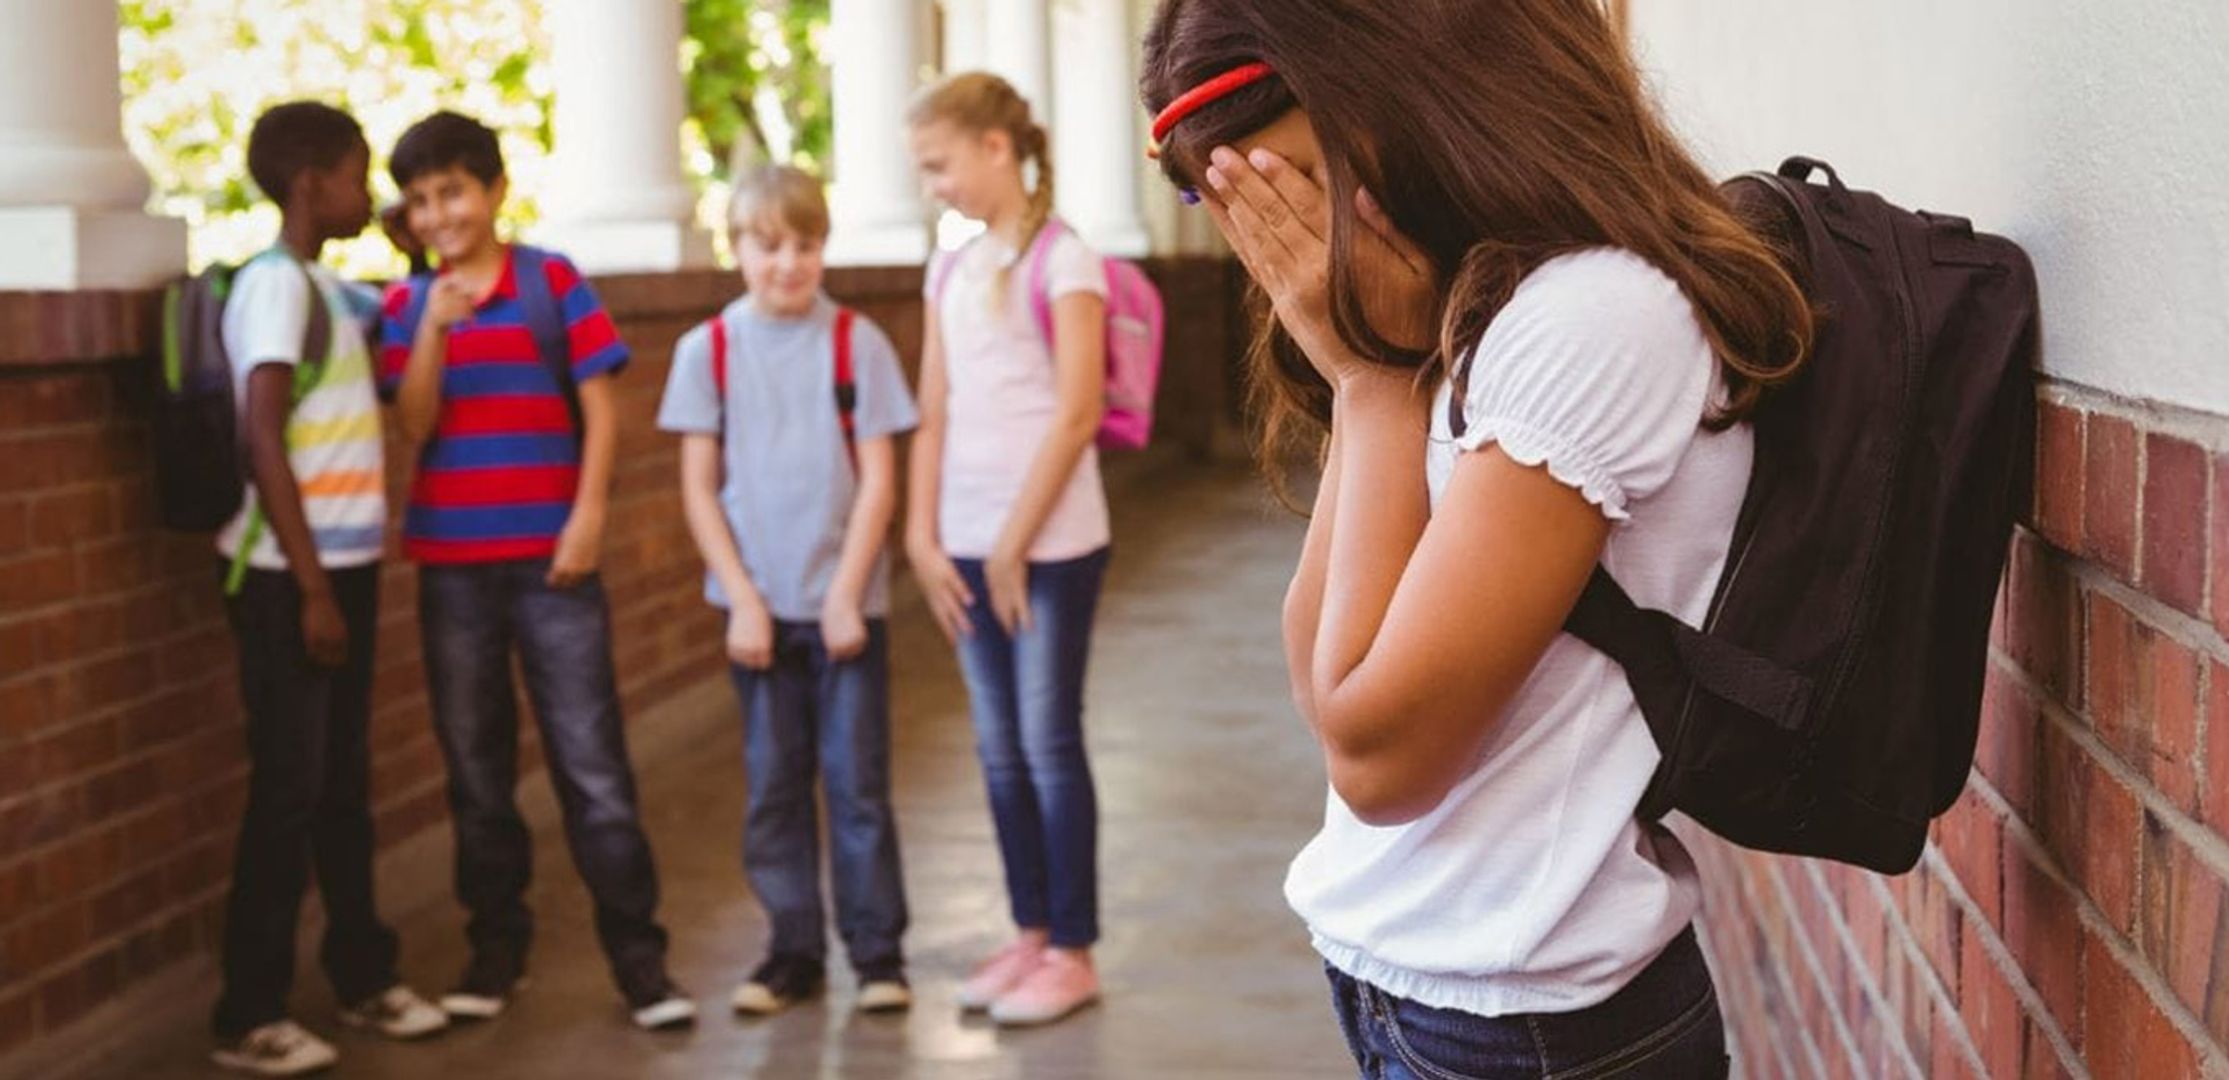 Brigas na escola: adultos devem agir como mediadores